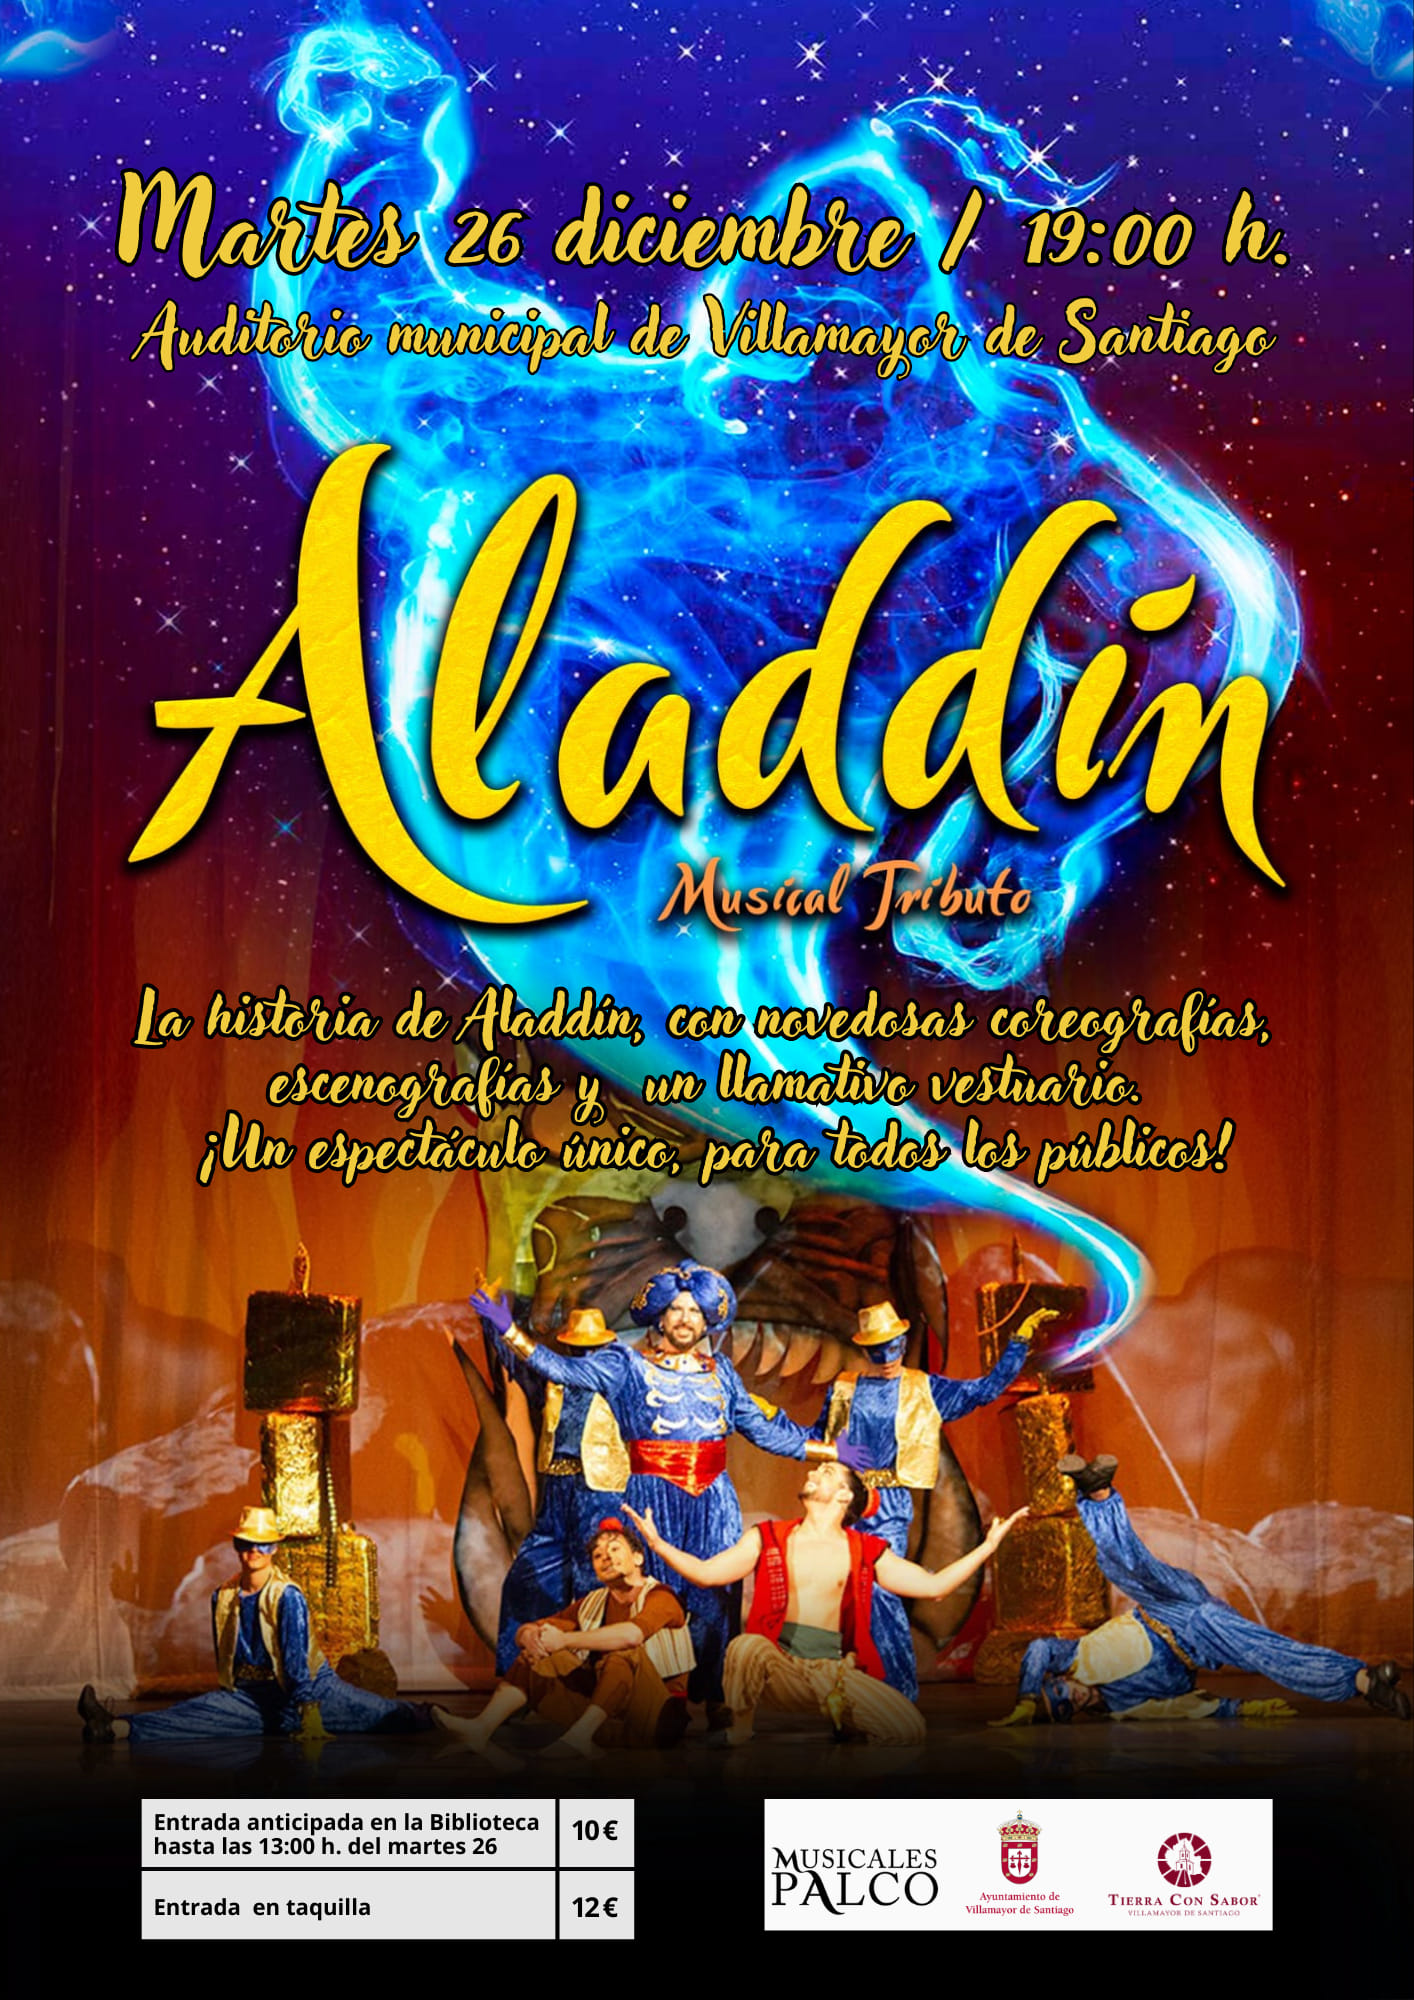 En este momento estás viendo Aladdín, musical tributo en Villamayor de Santiago